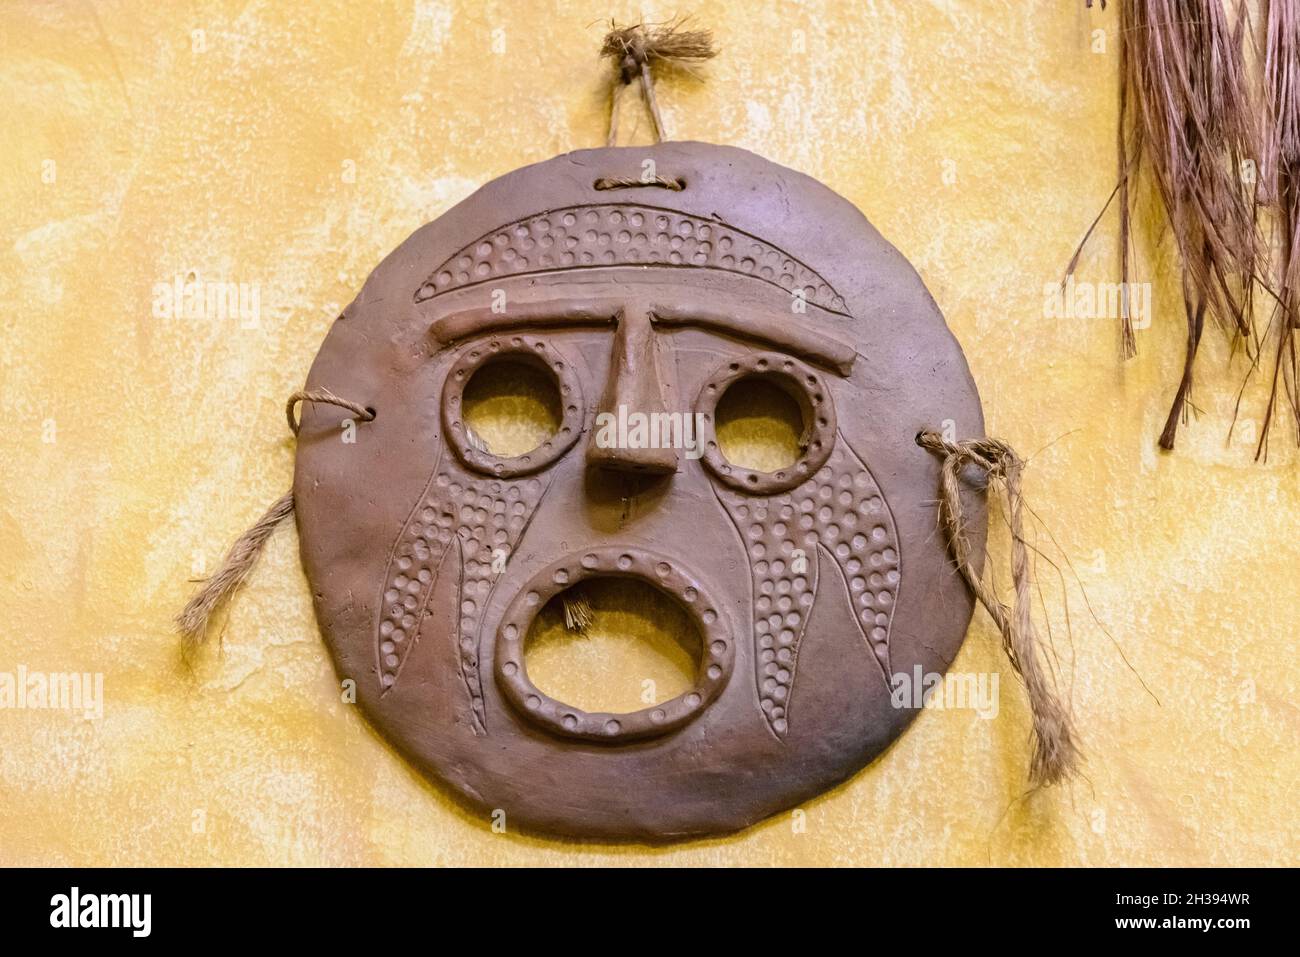 Le masque de visage en argile indigène décorera le mur.Cuzco, Pérou. Banque D'Images